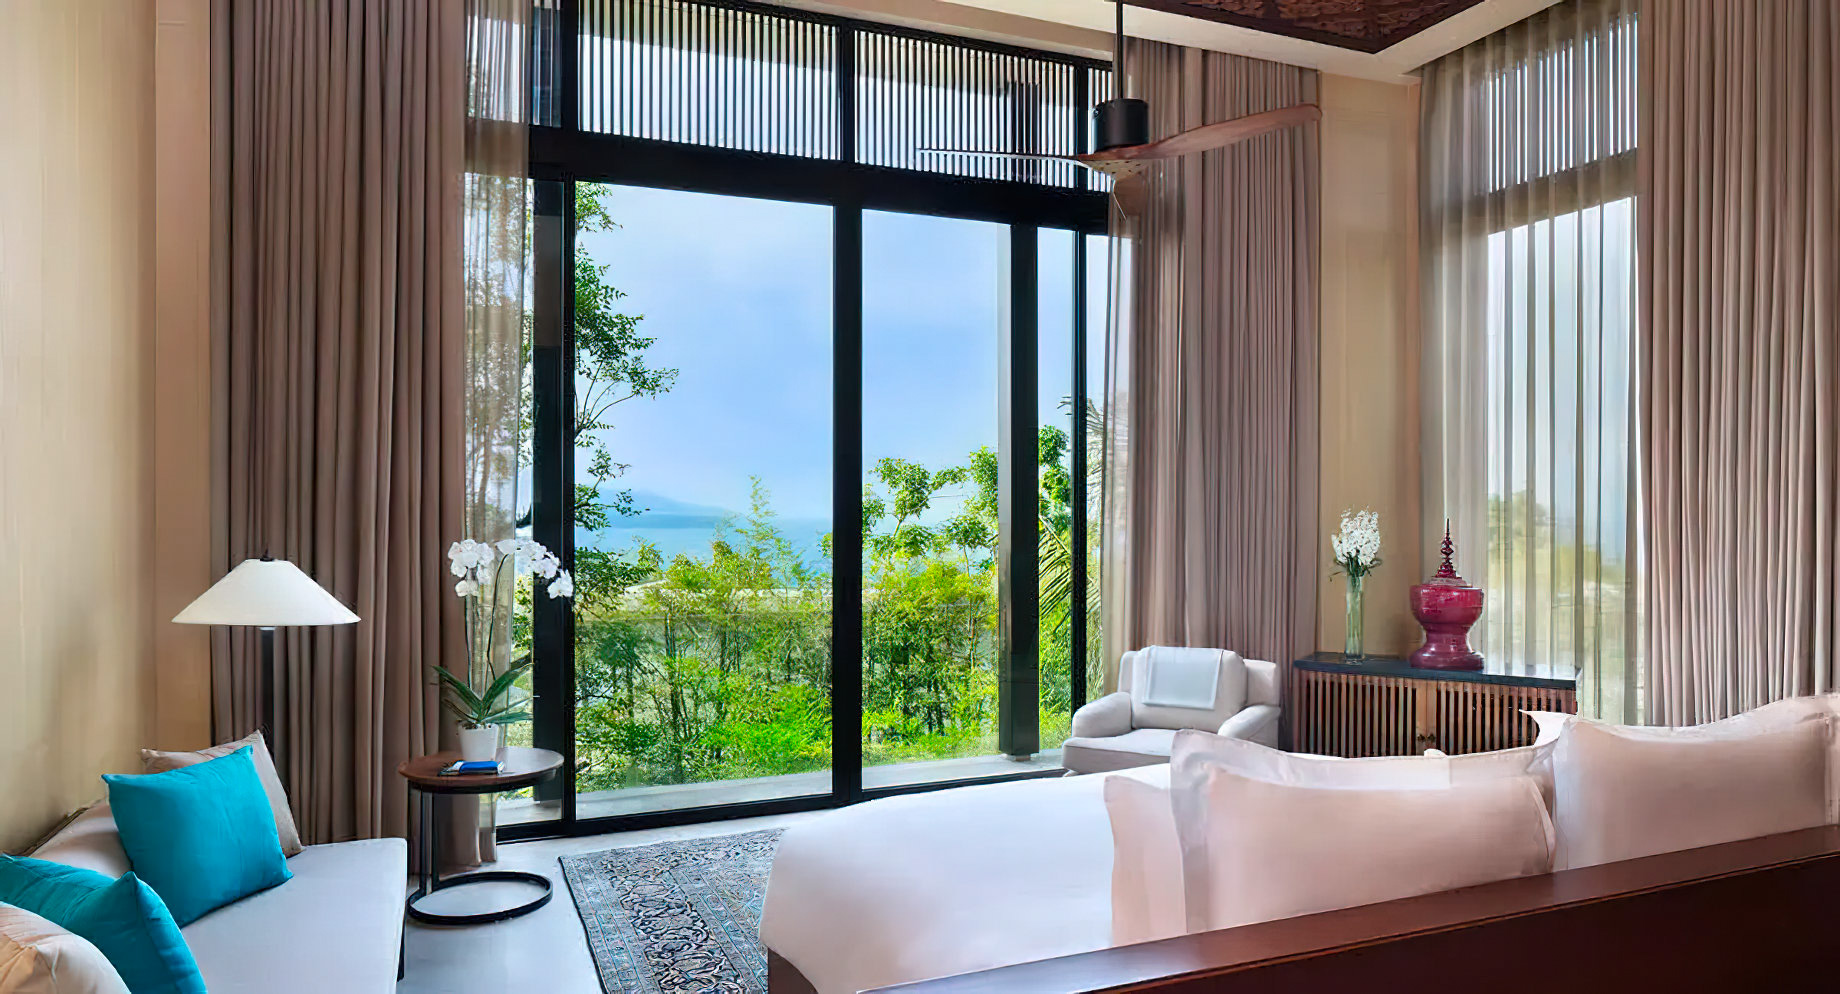 Anantara Layan Phuket Resort & Residences – Thailand – Five Bedroom Sea View Residence